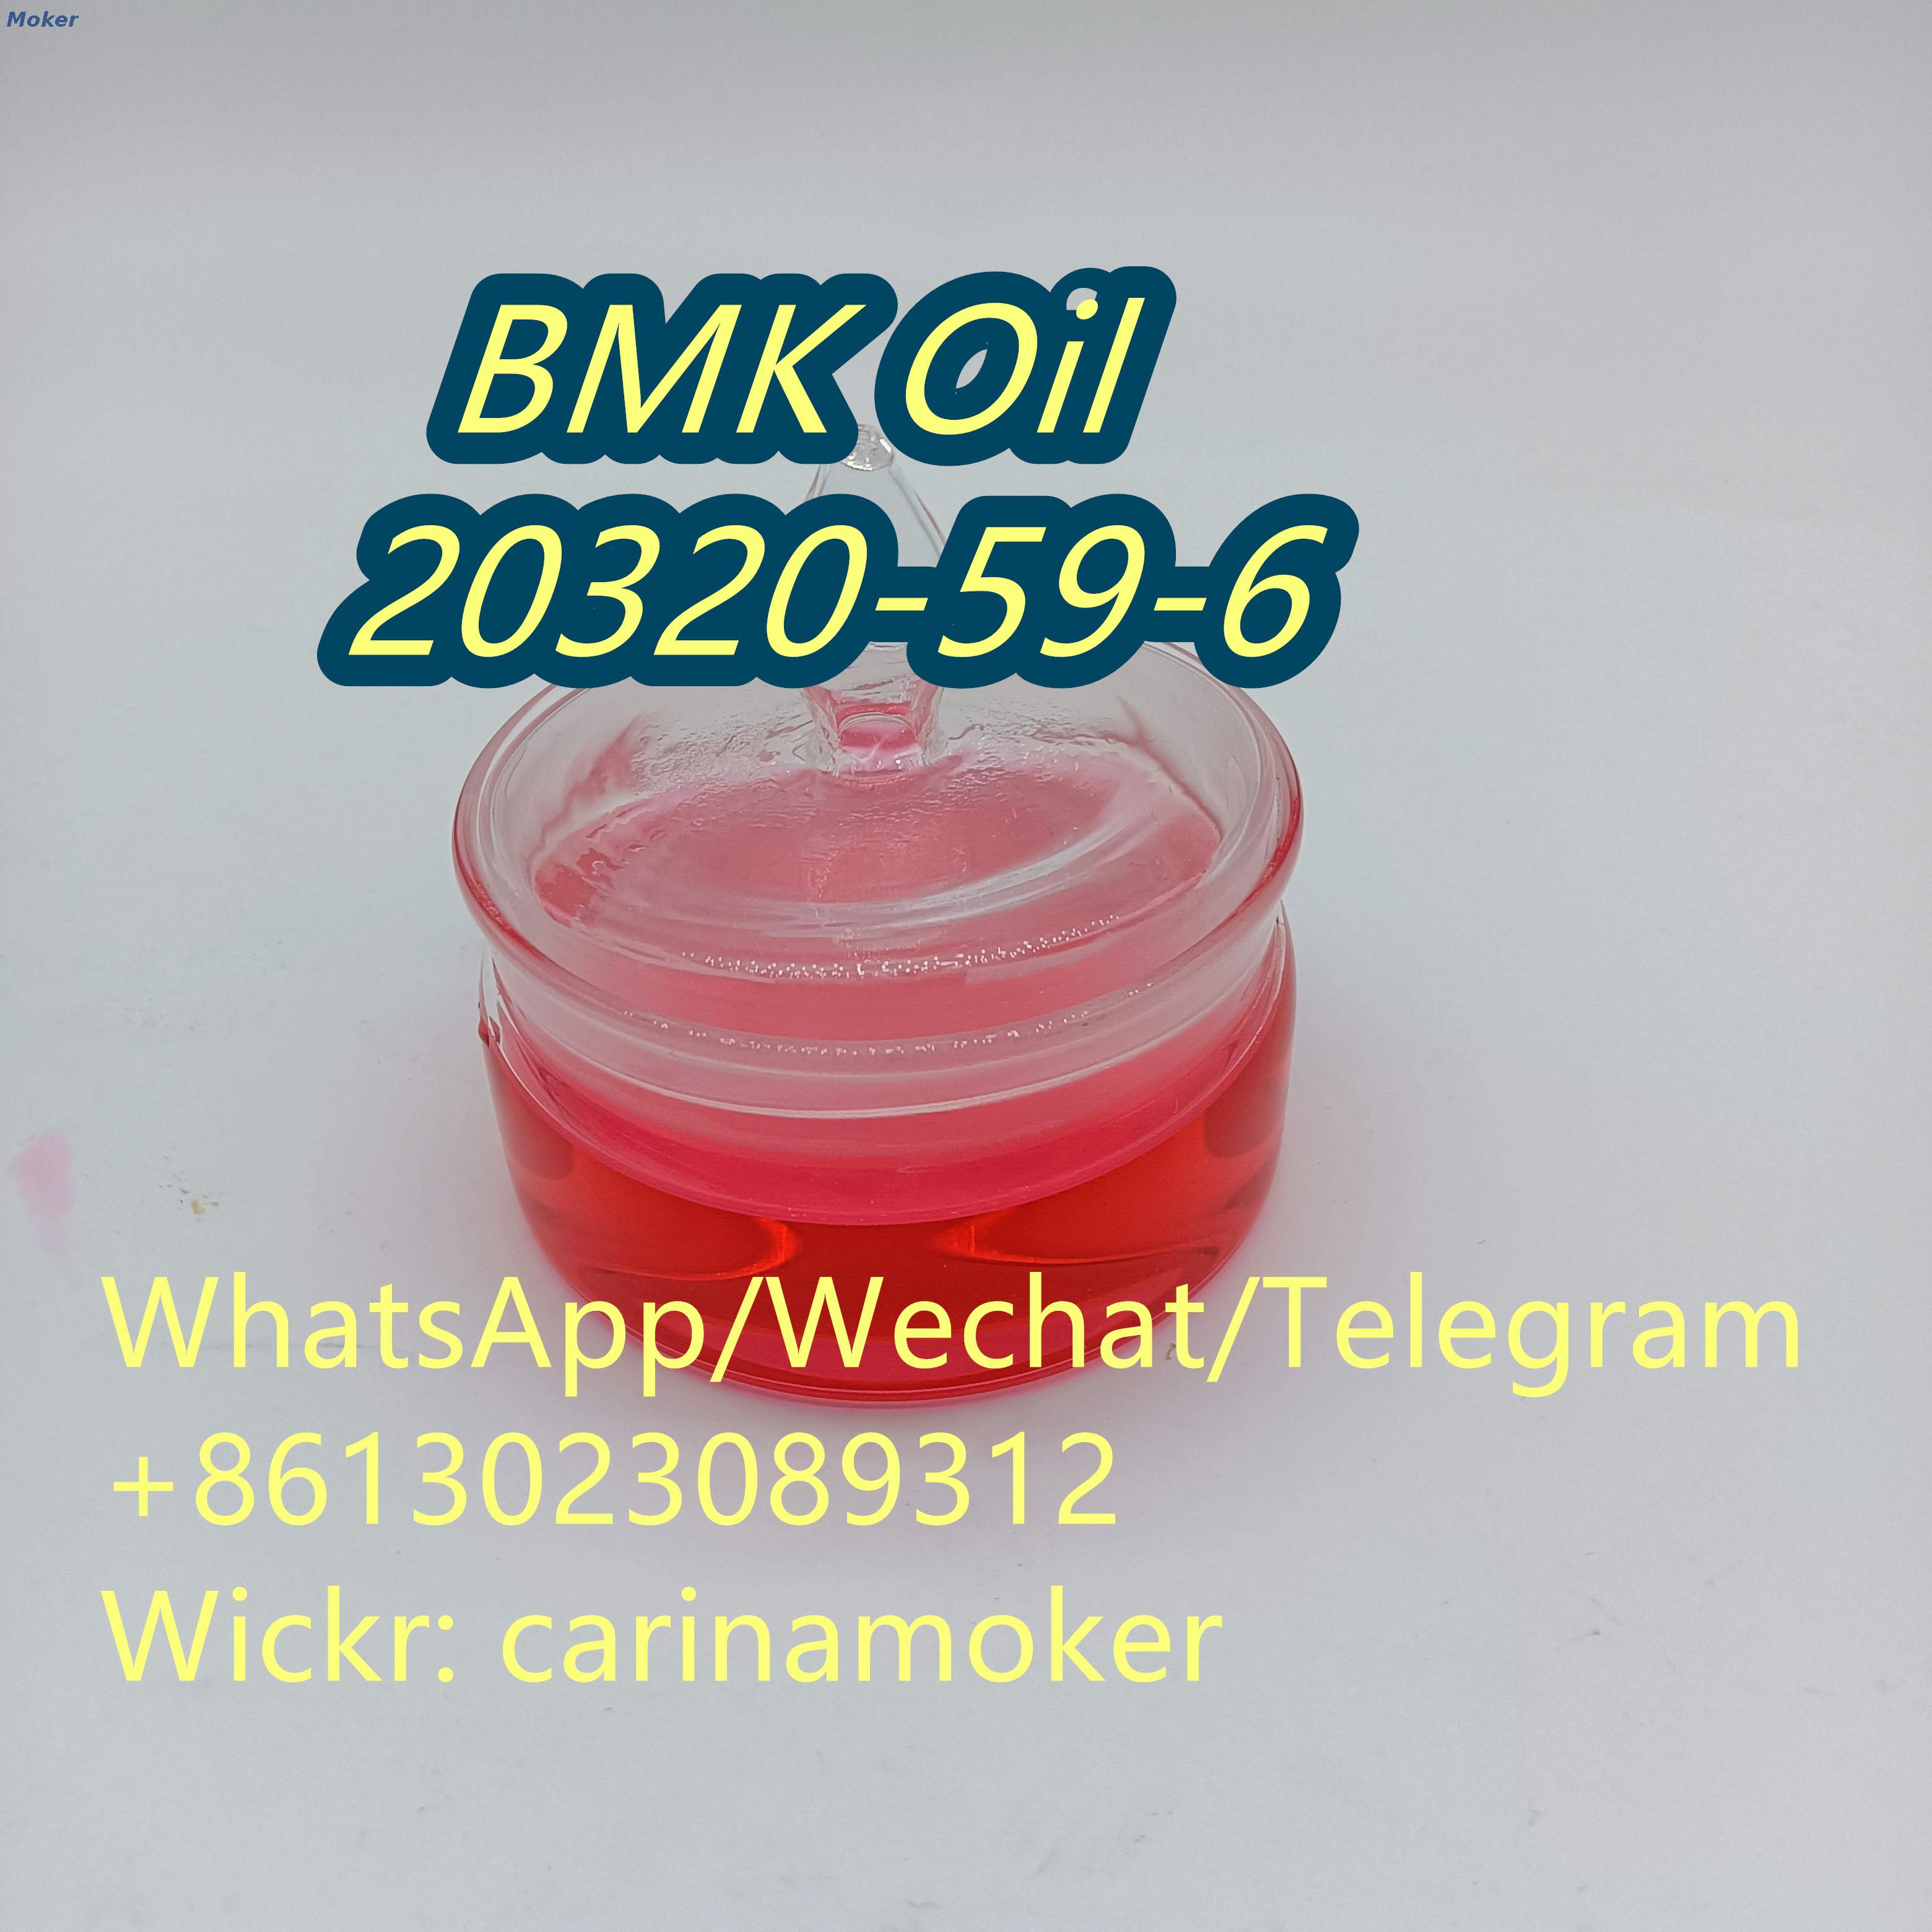 Bmk-Pulver CAS 20320-59-6 des hochreinen Produkt-pharmazeutischen Zwischenprodukts mit gutem Preis